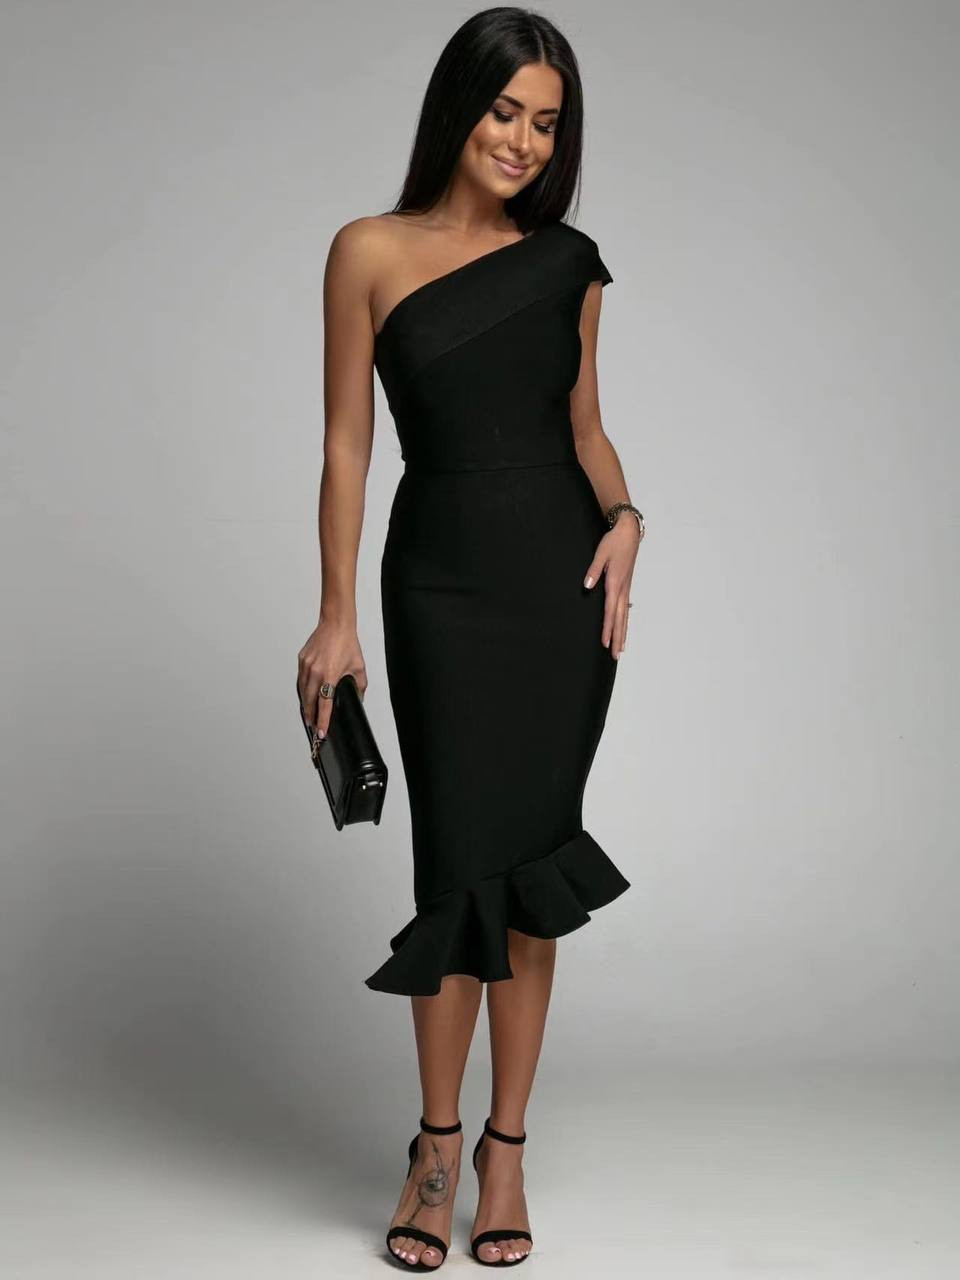 Γυναικείο φόρεμα με μήκος κάτω απο το γόνατο 22731 μαύρο